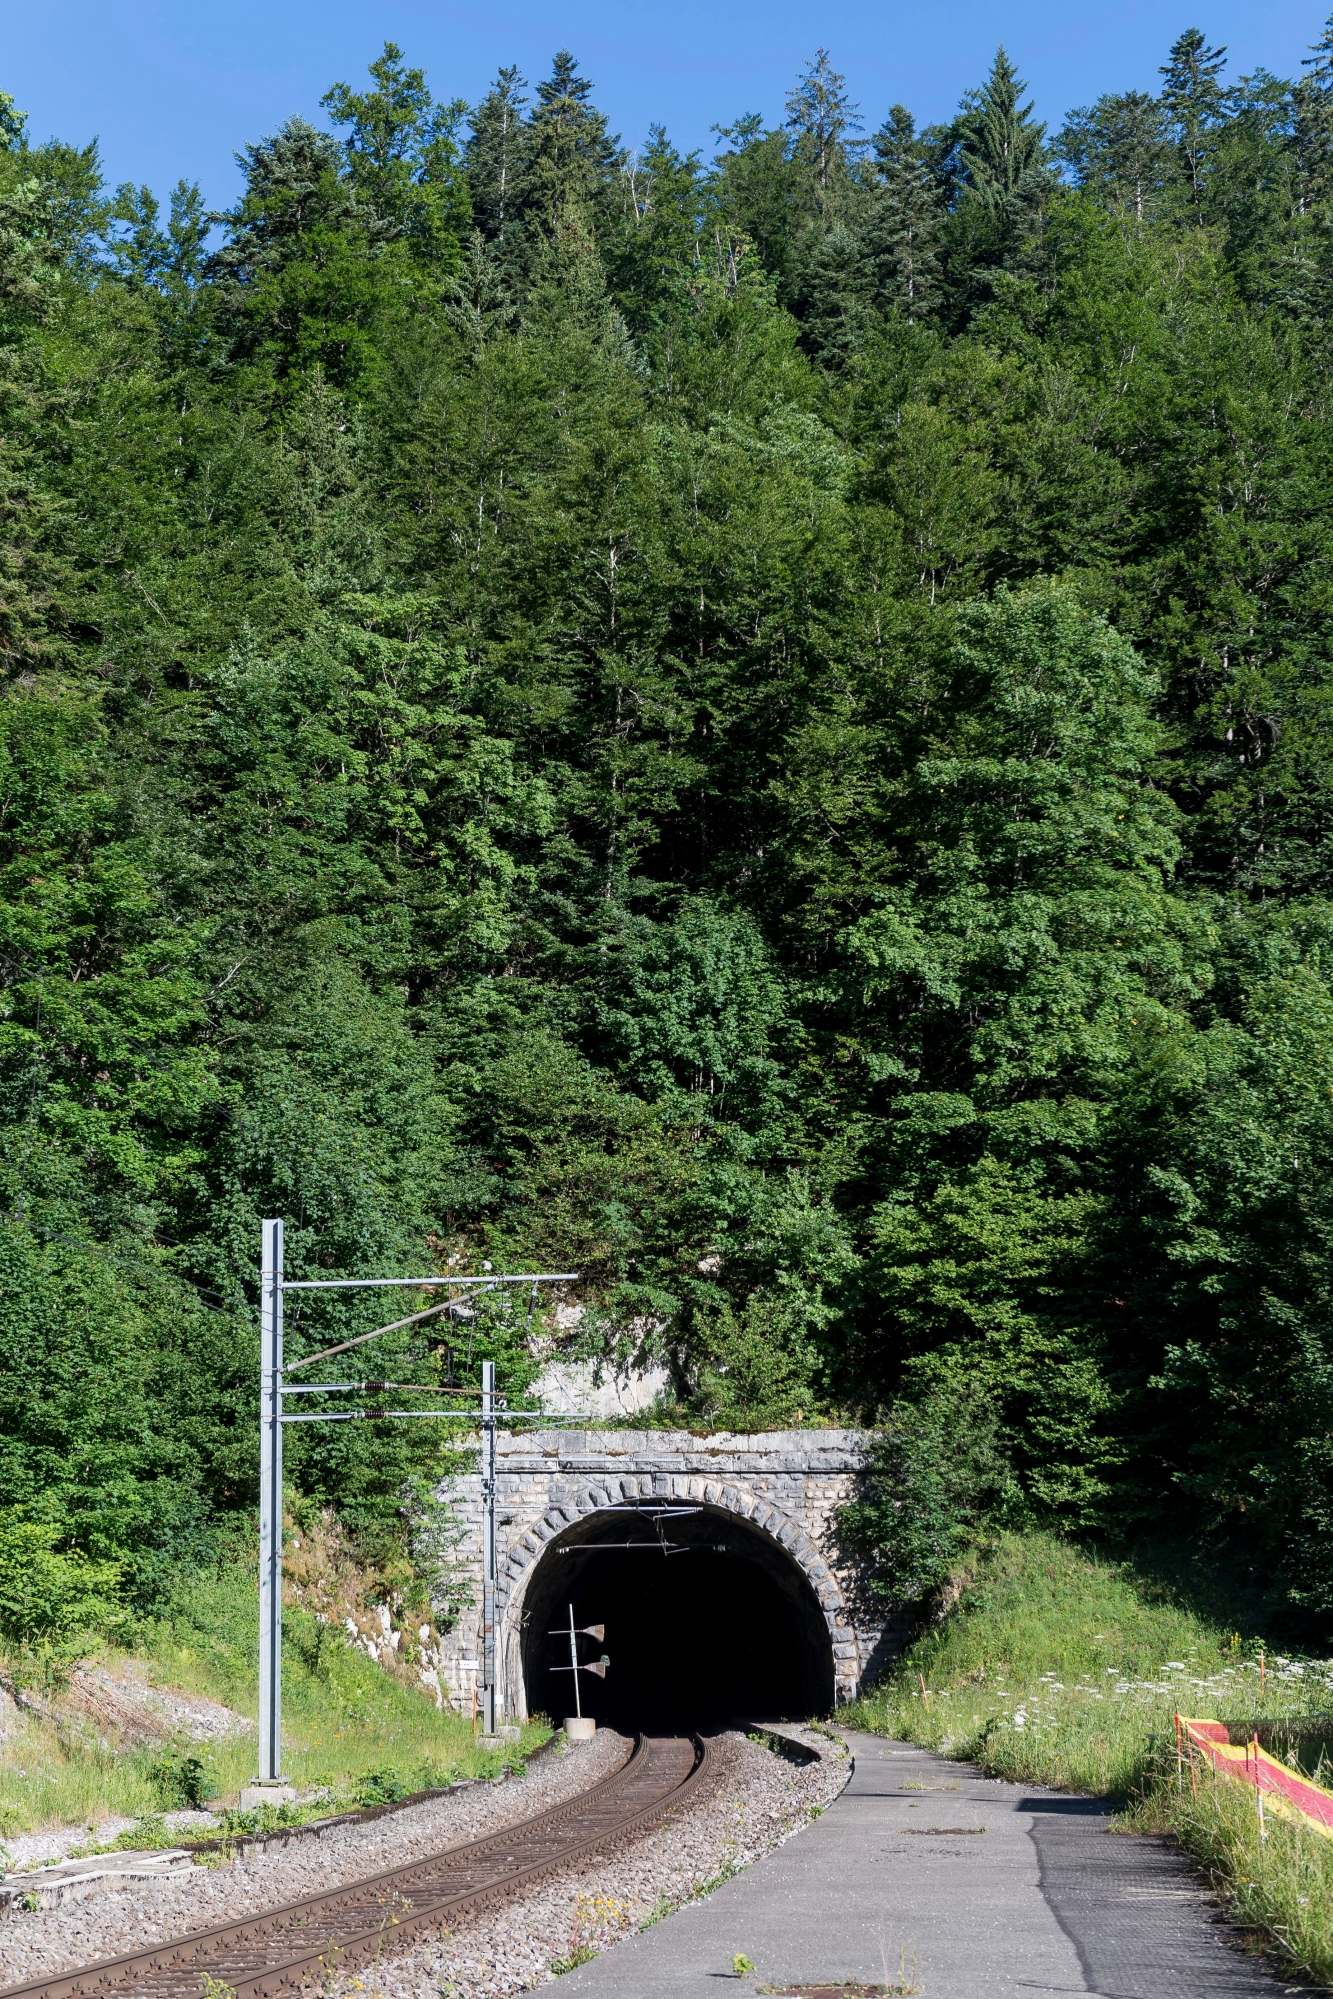 Ligne ferroviaire La Chaux-de-Fonds - Neuchatel. Les CFF vont assainir les tunnels ferroviaires sous La Vue-des-Alpes qui seront fermes pour travaux d'entretien en 2021

Les Convers, le 05 juillet 2017
Photo : Lucas Vuitel LIGNE LA CHAUX-DE-FONDS - NEUCHATEL